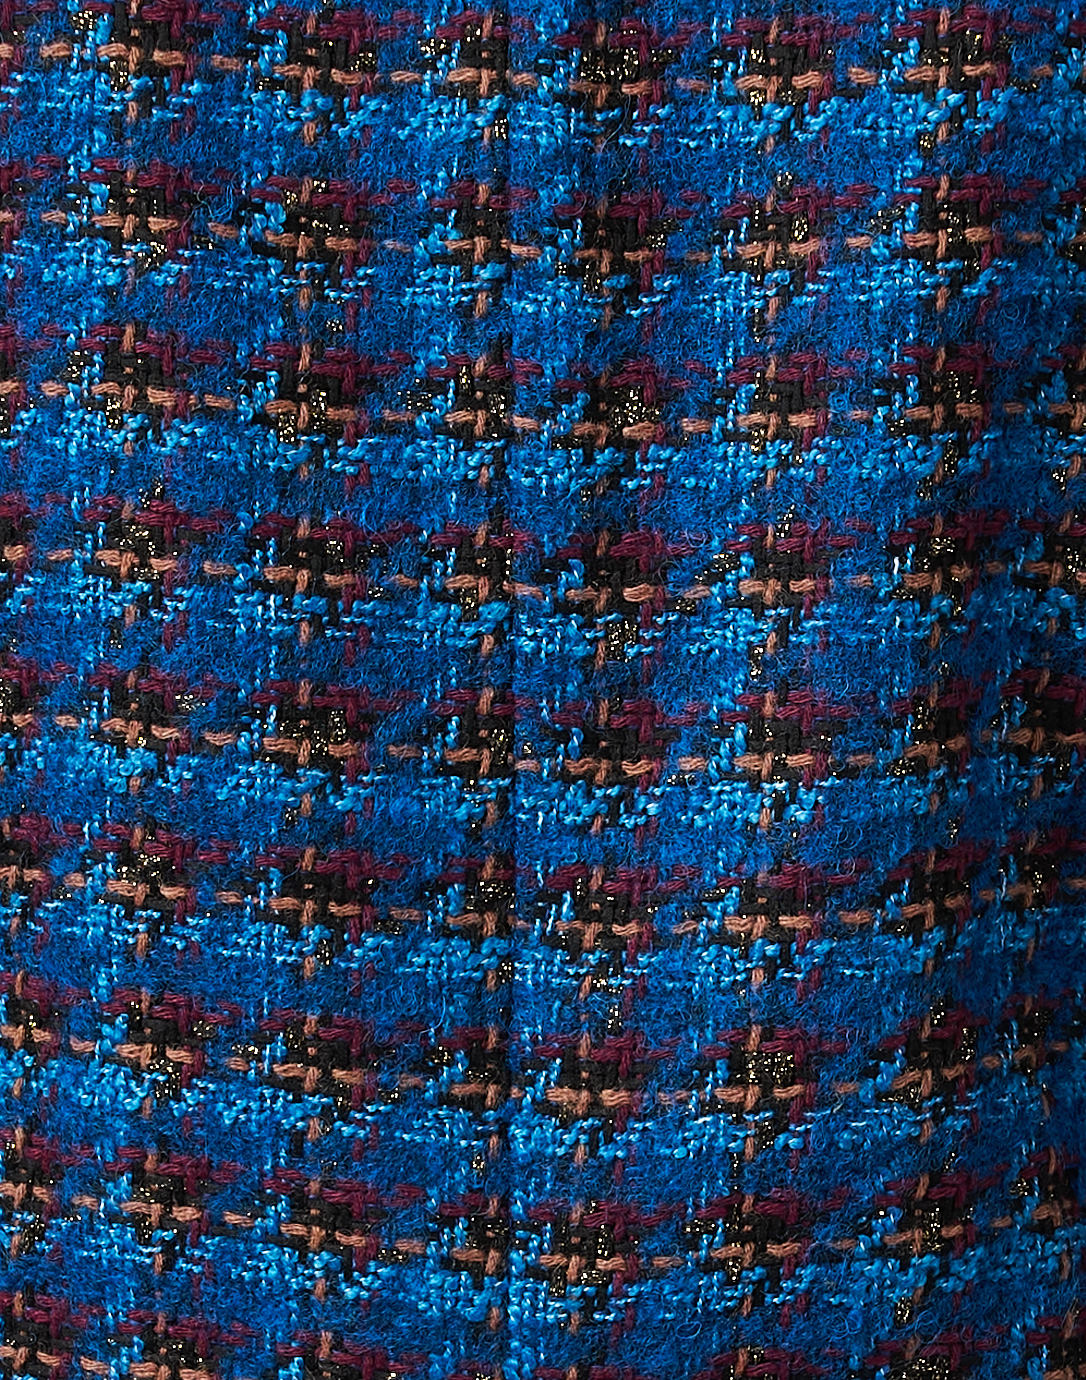 CHANEL Flap Tweed Fabric Shoulder Bag Multicolor - 25% OFF